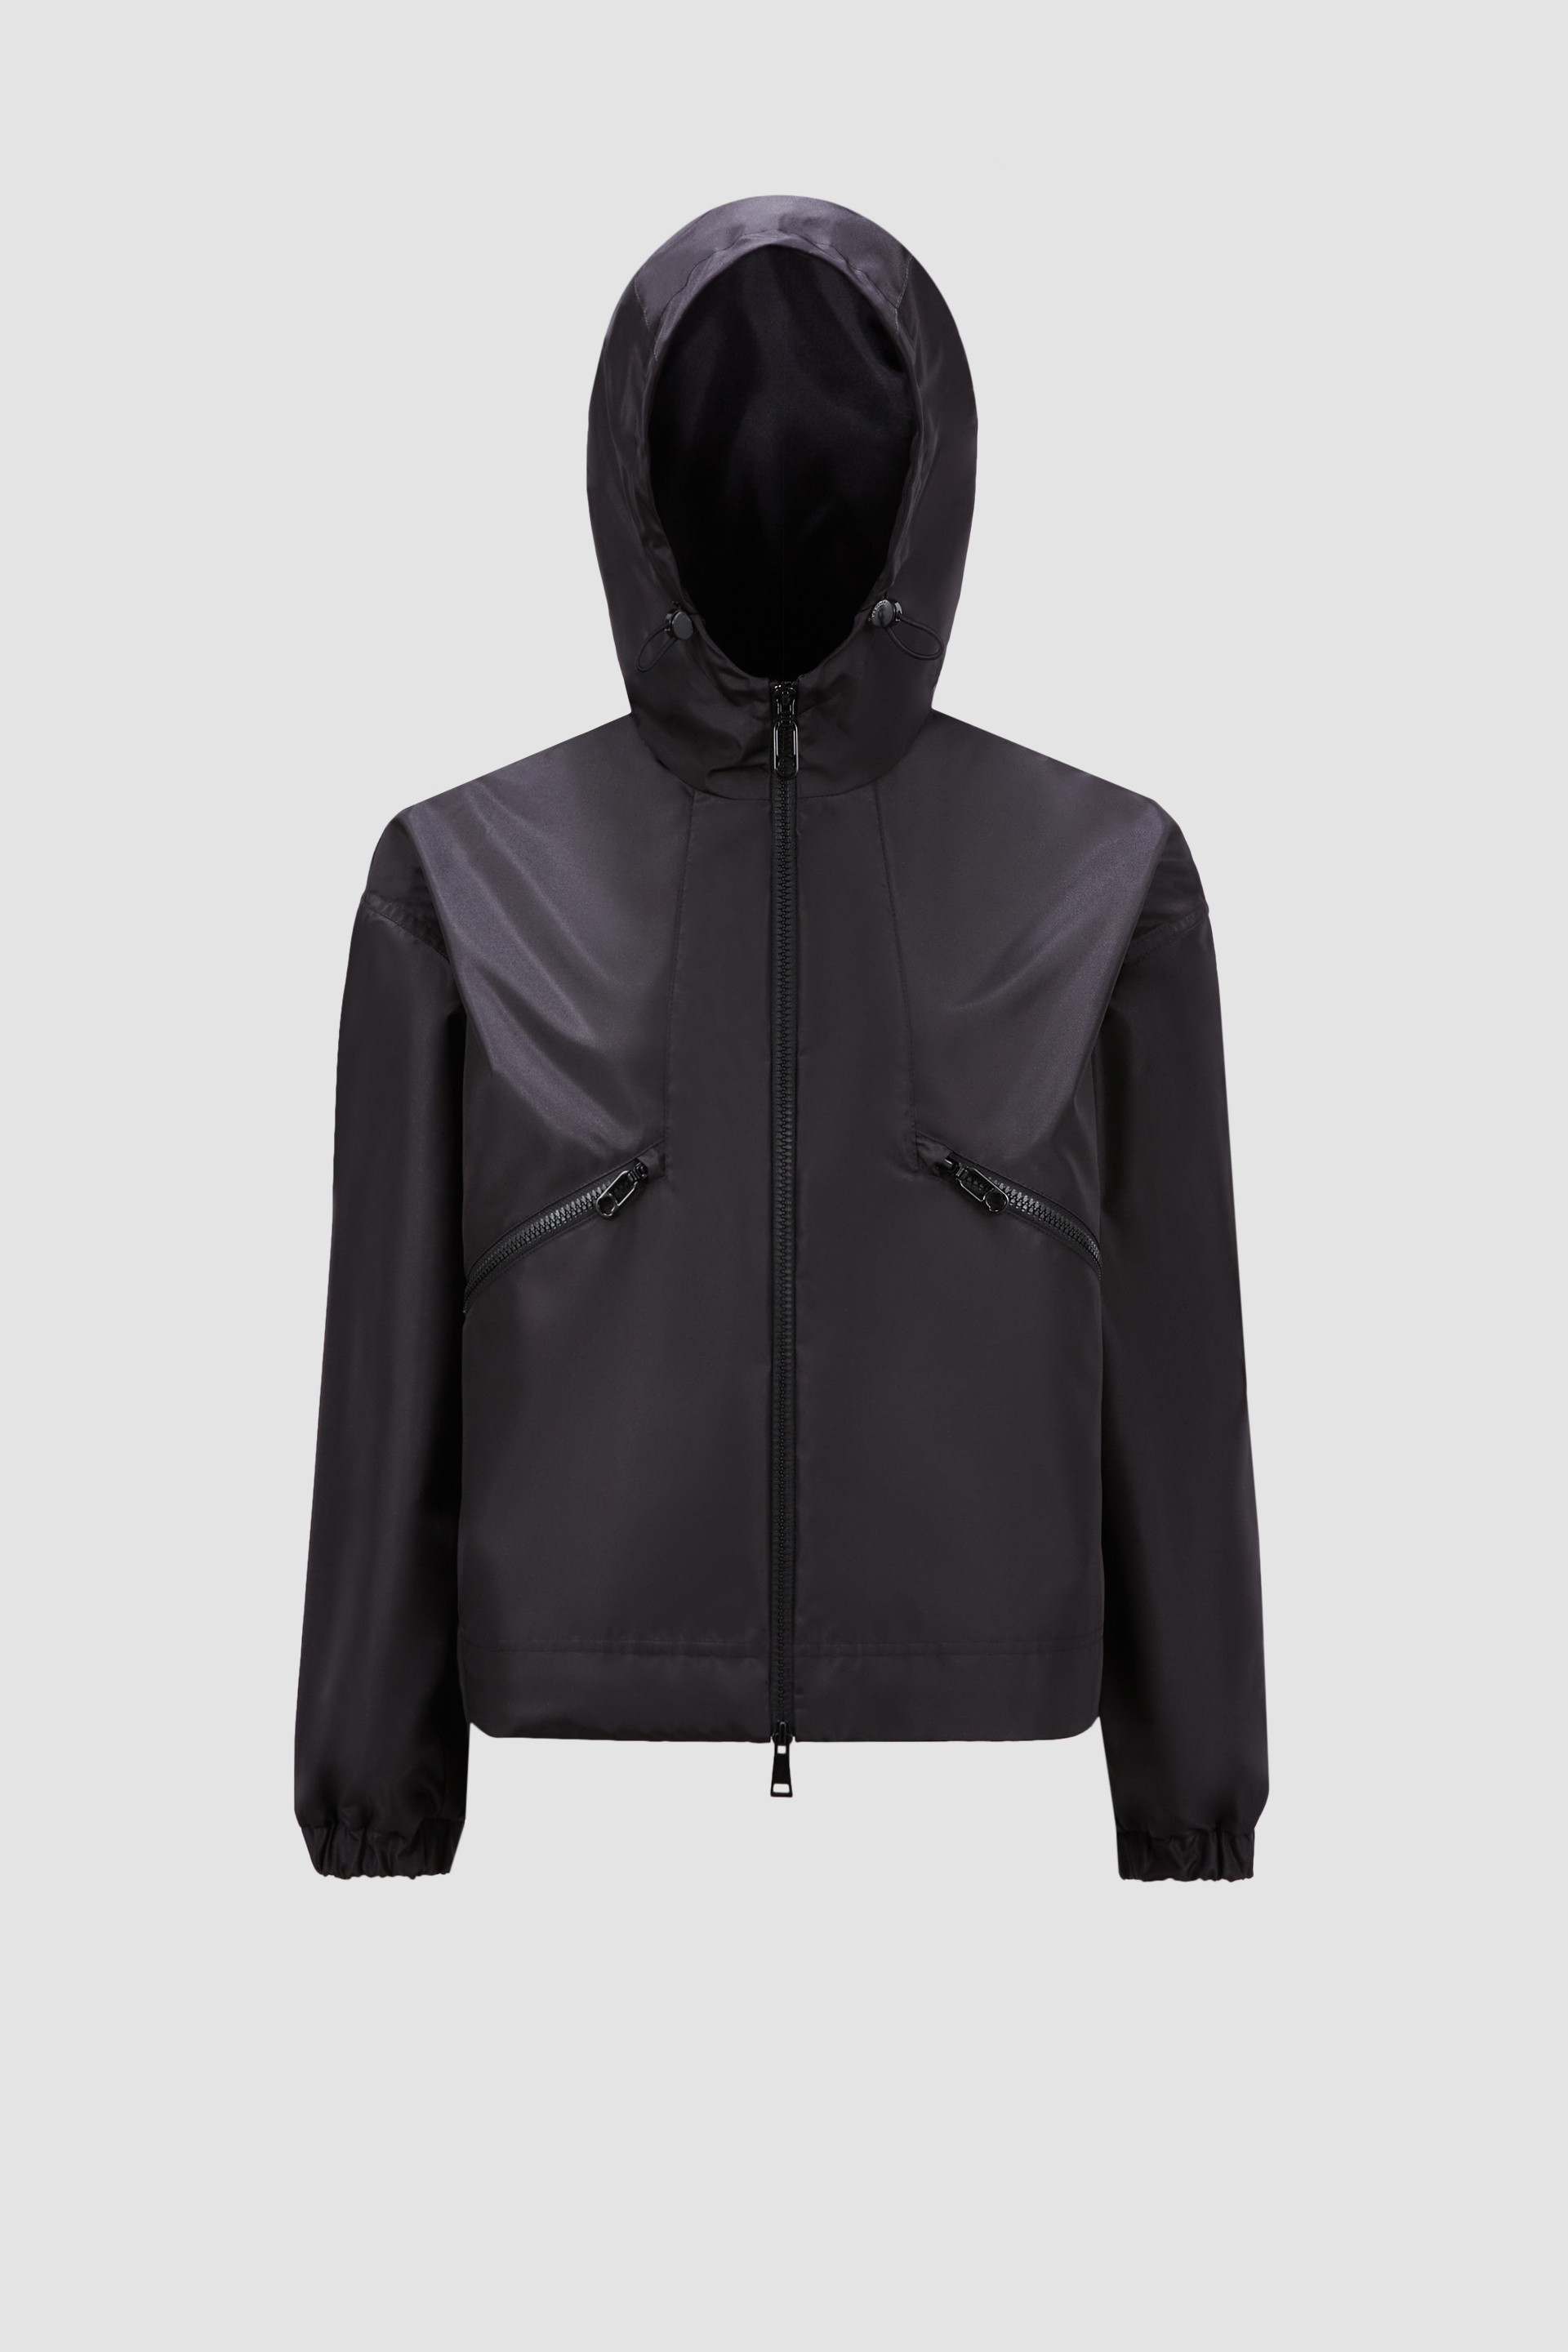 ブラック Marmaceジャケット : ウインドブレーカーとレインコート 向け 